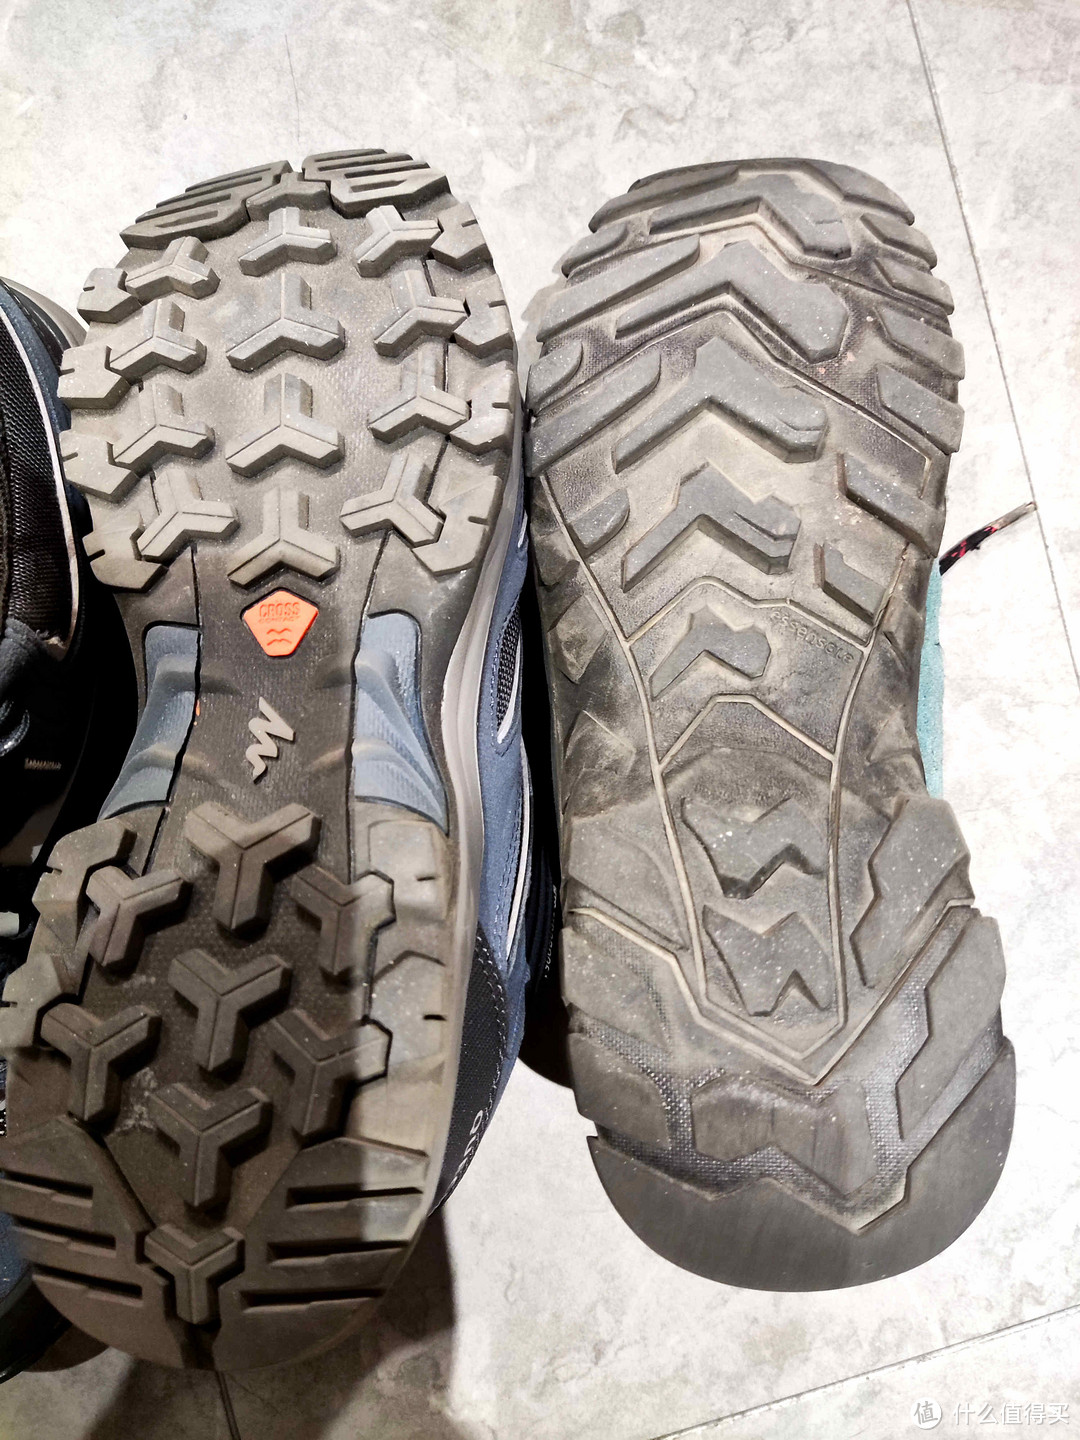 看下鞋底，左边是新的，右边是旧的，后跟磨损明显。两者的花纹不同，看上去，左边新鞋的鞋底花纹会更防滑。由于新的还没在比较滑的地上试过，旧的在打湿的光滑地面上还是比较滑的，需要小心。